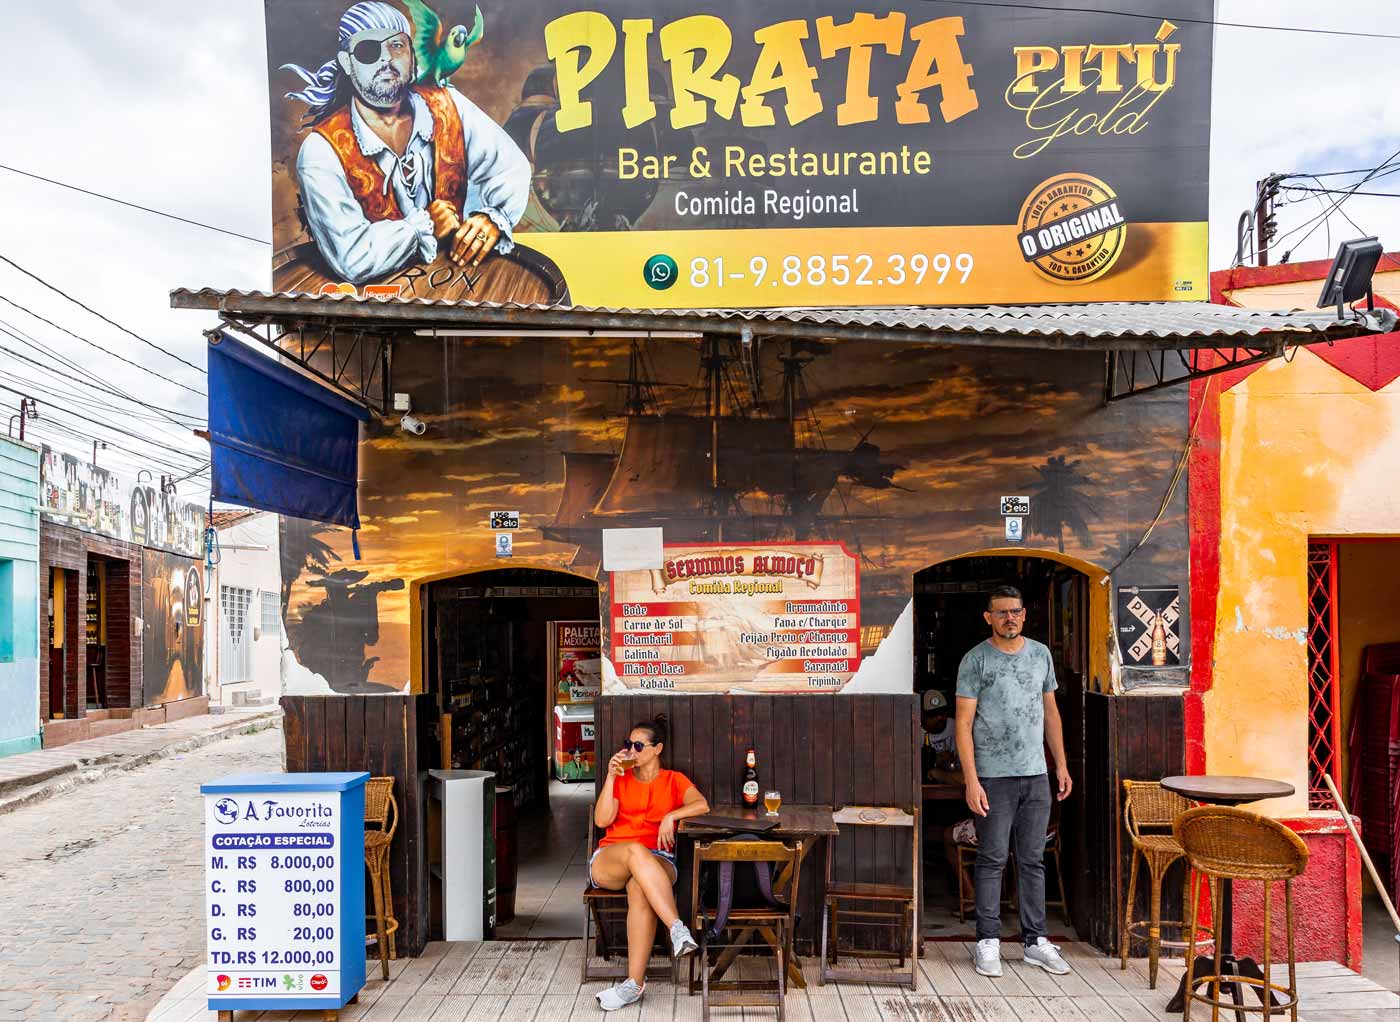 Pirata Bar e Restaurante em Gravatá PE